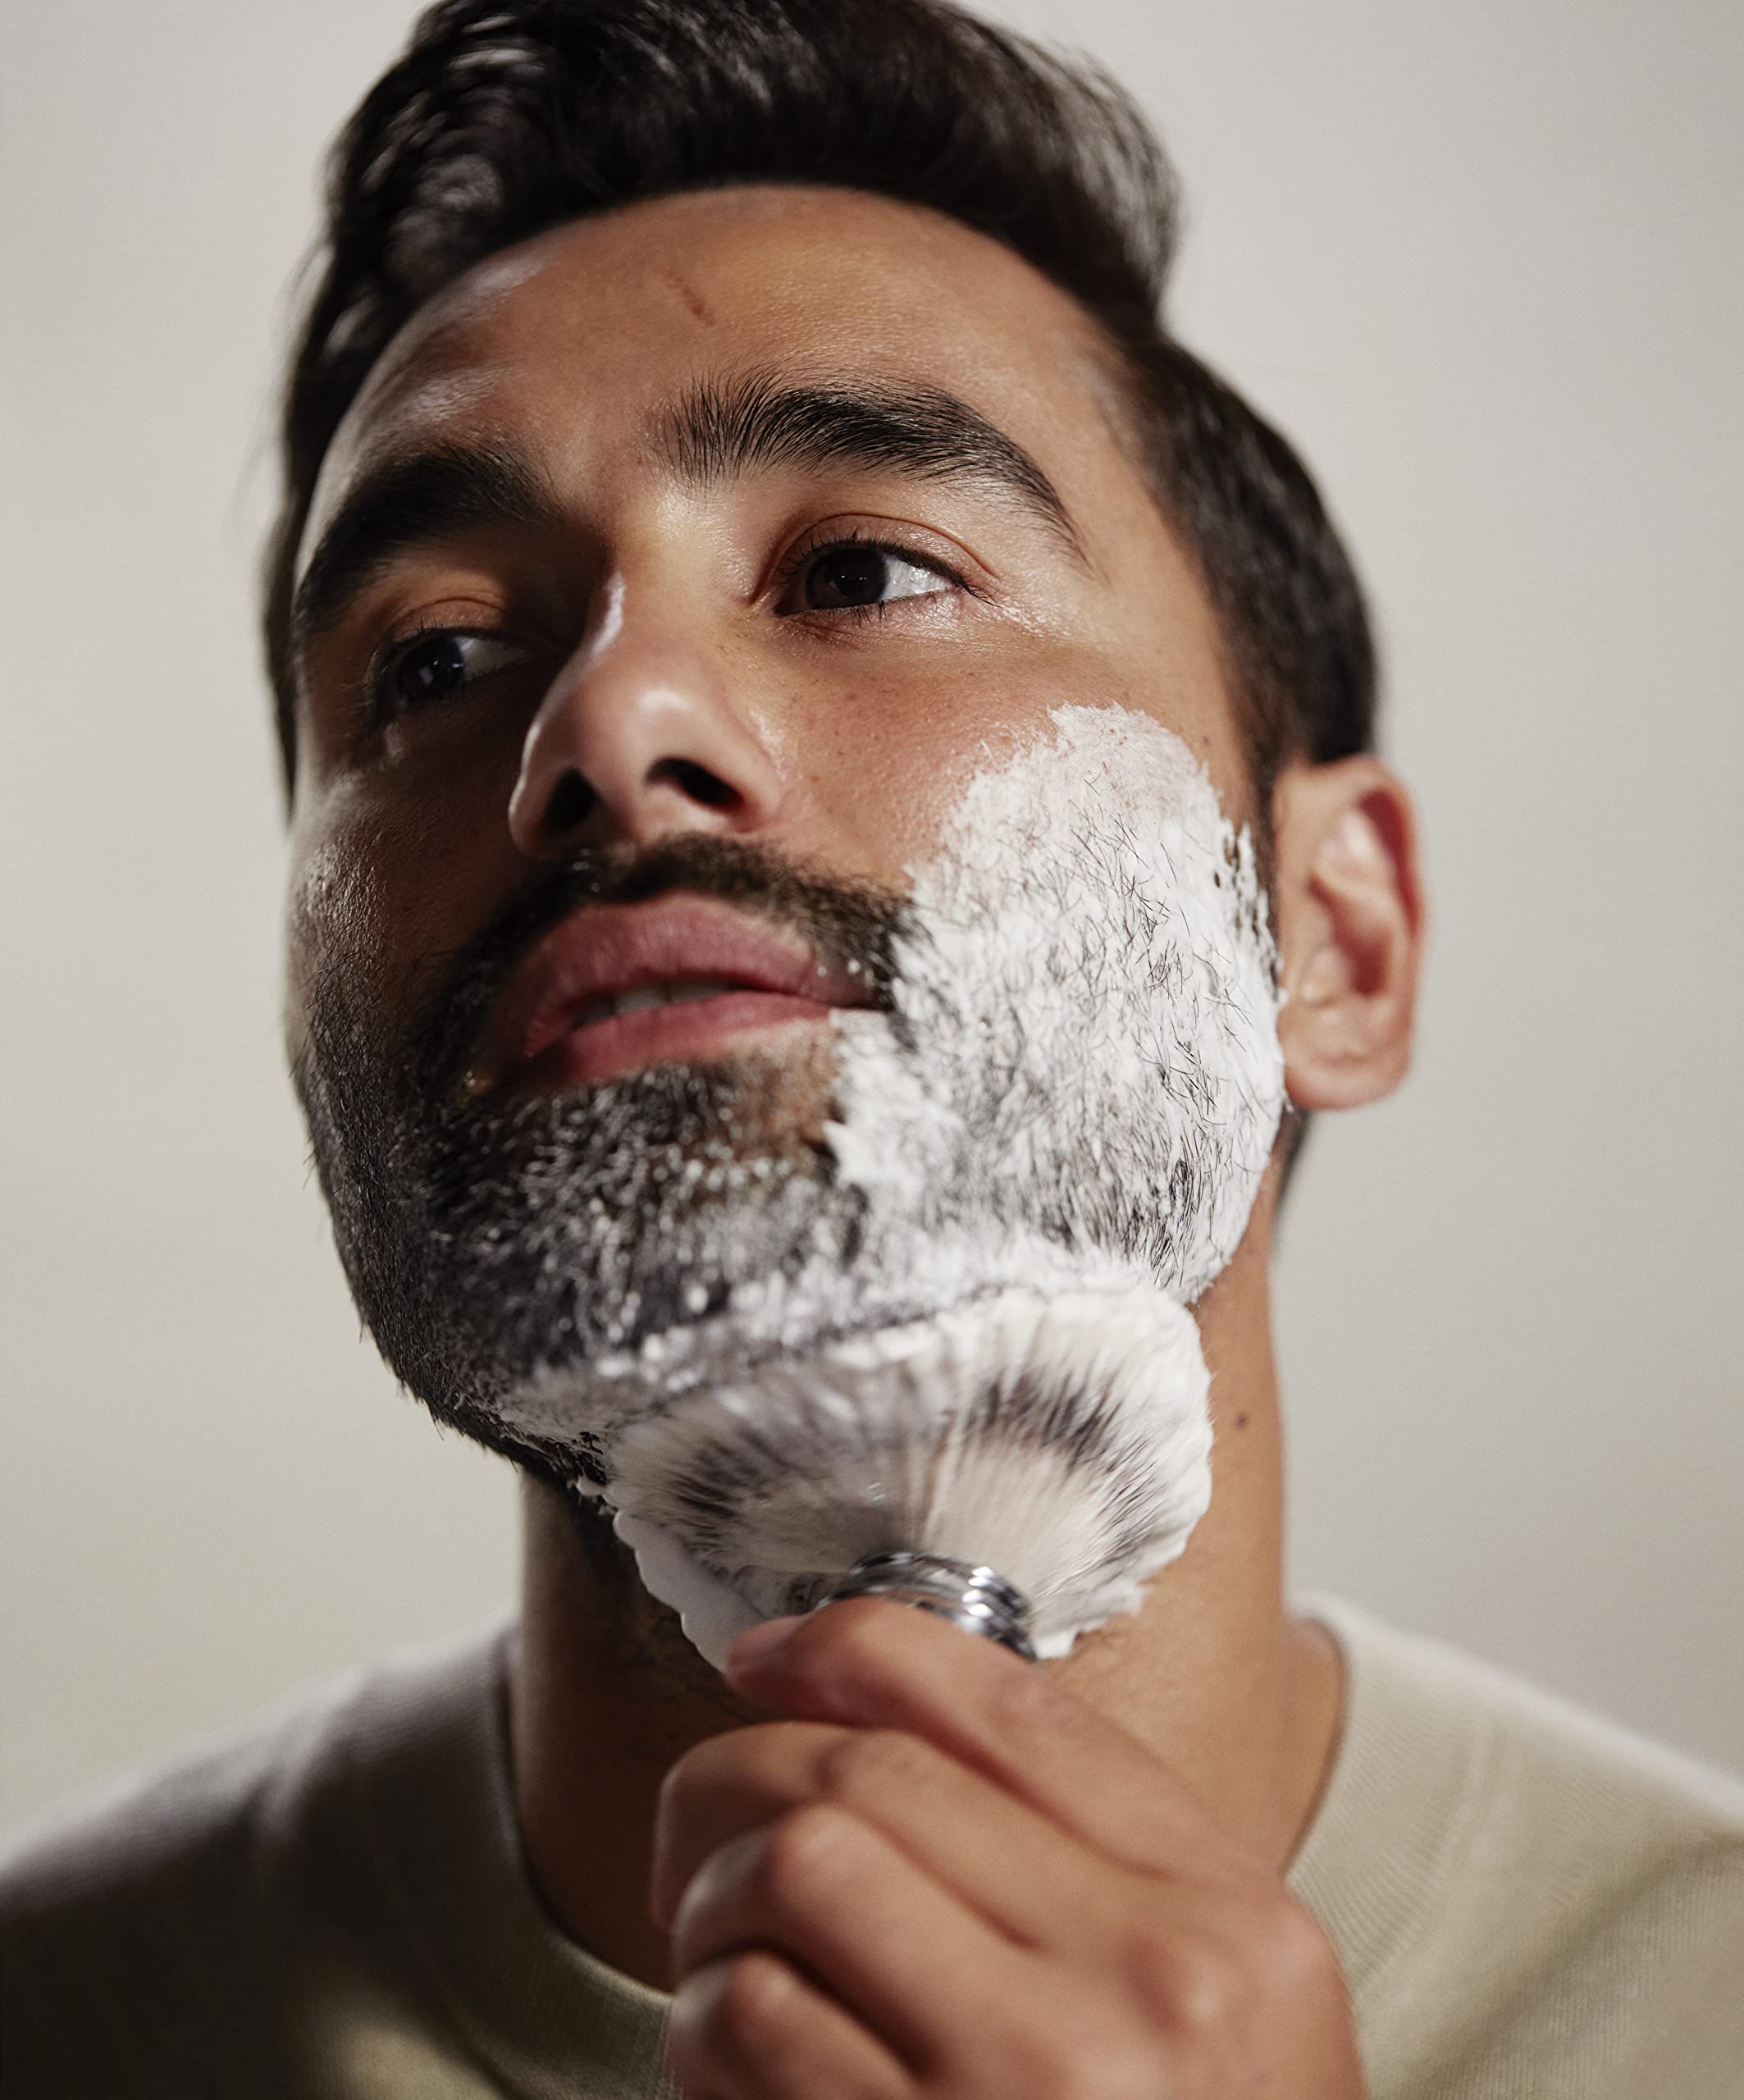 The Art of Shaving Unscented Shaving Cream for Men